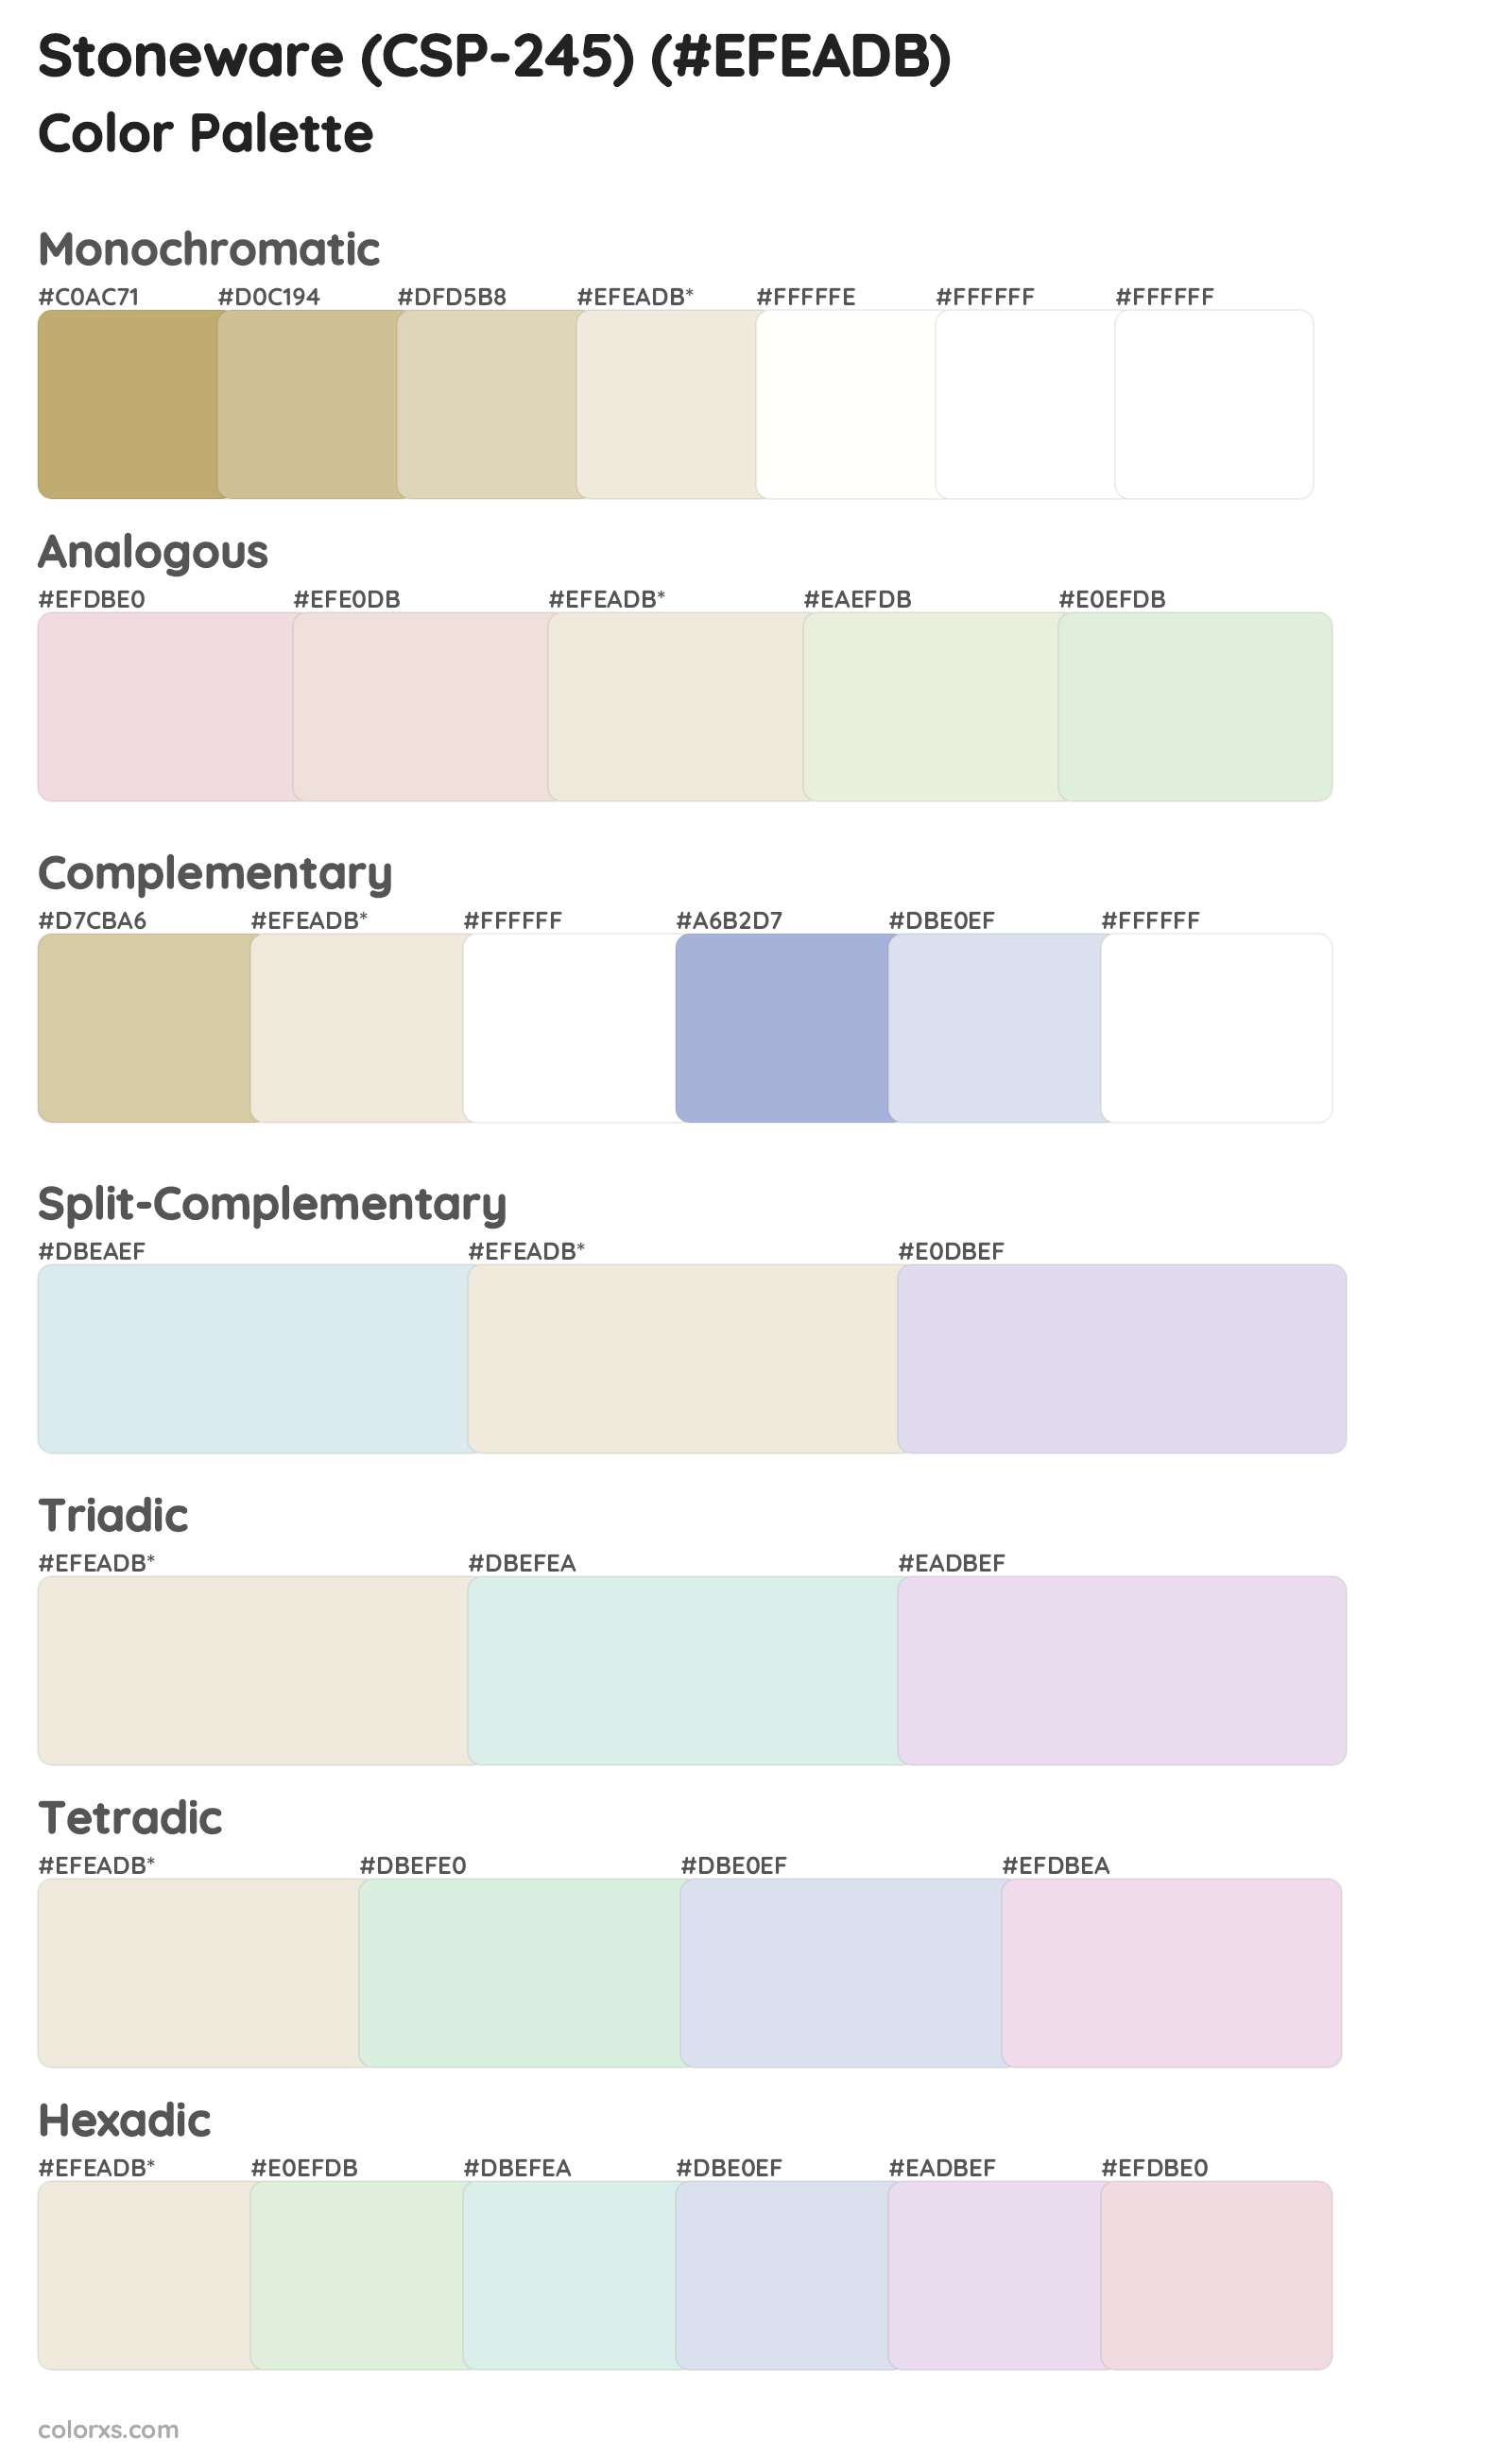 Stoneware (CSP-245) Color Scheme Palettes